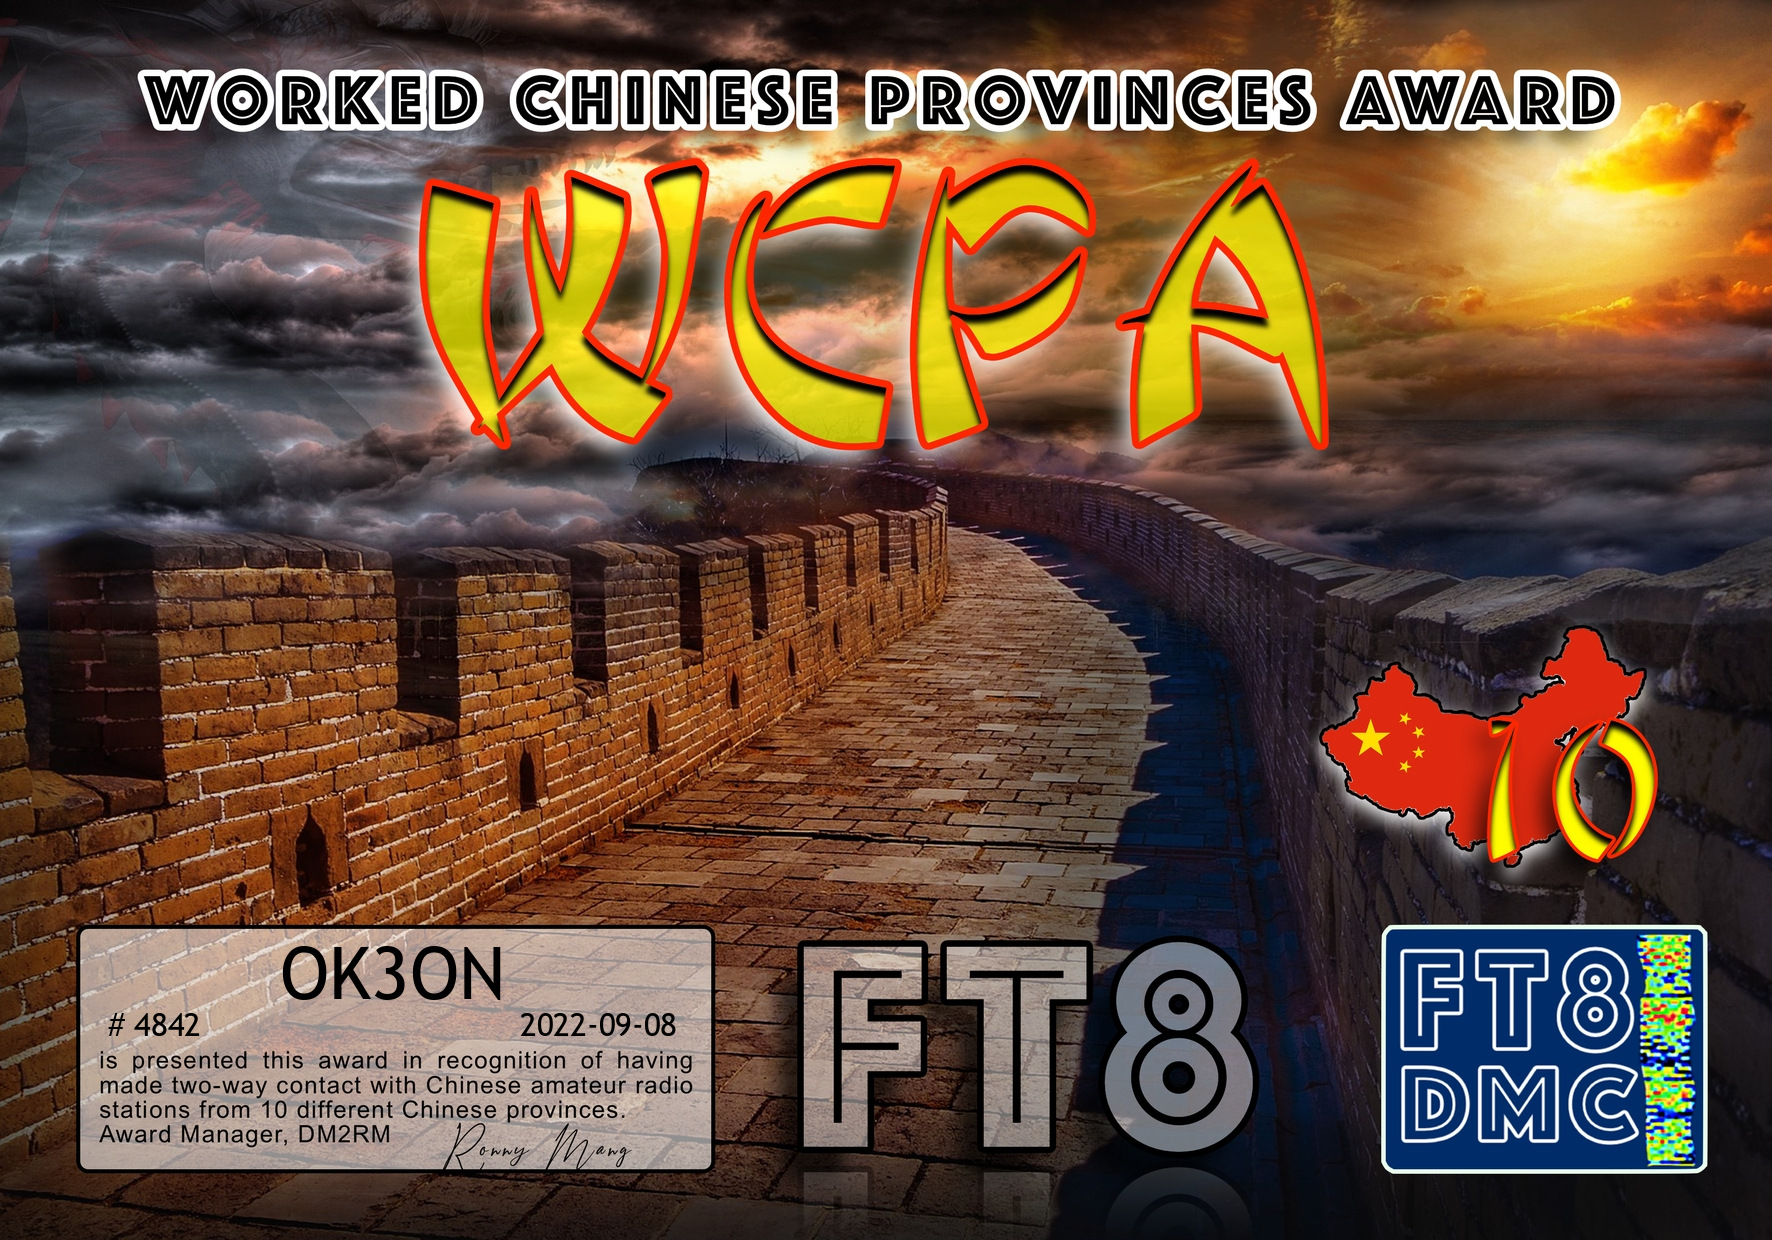 awards/OK3ON-WCPA-10_FT8DMC.jpg